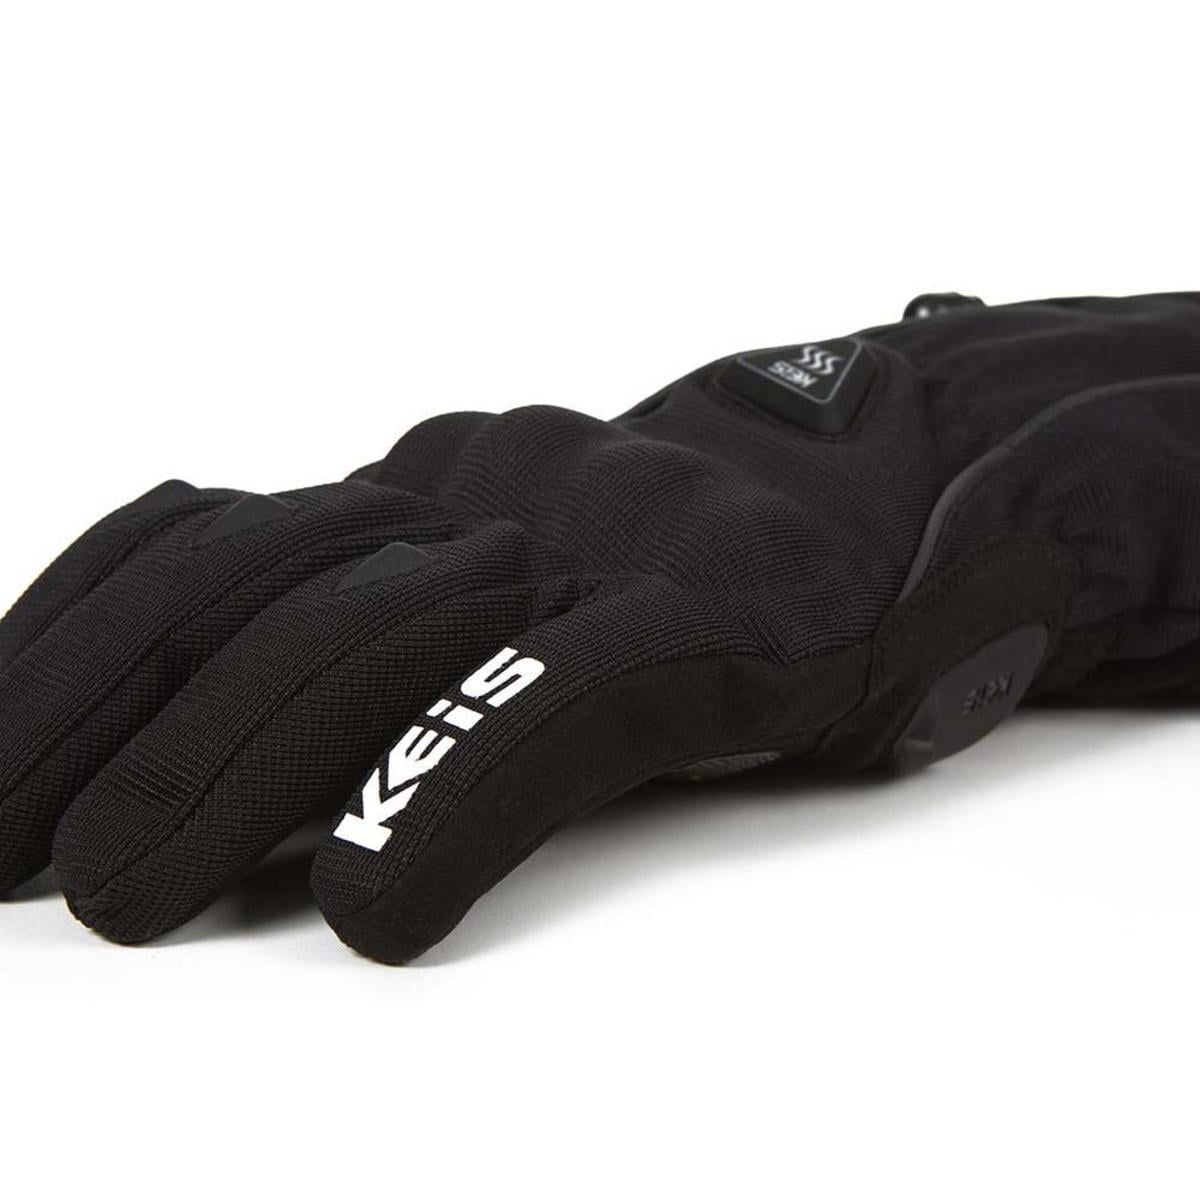 Keis G701 12V Premium Heated Bonded-Textile Touring Gloves 